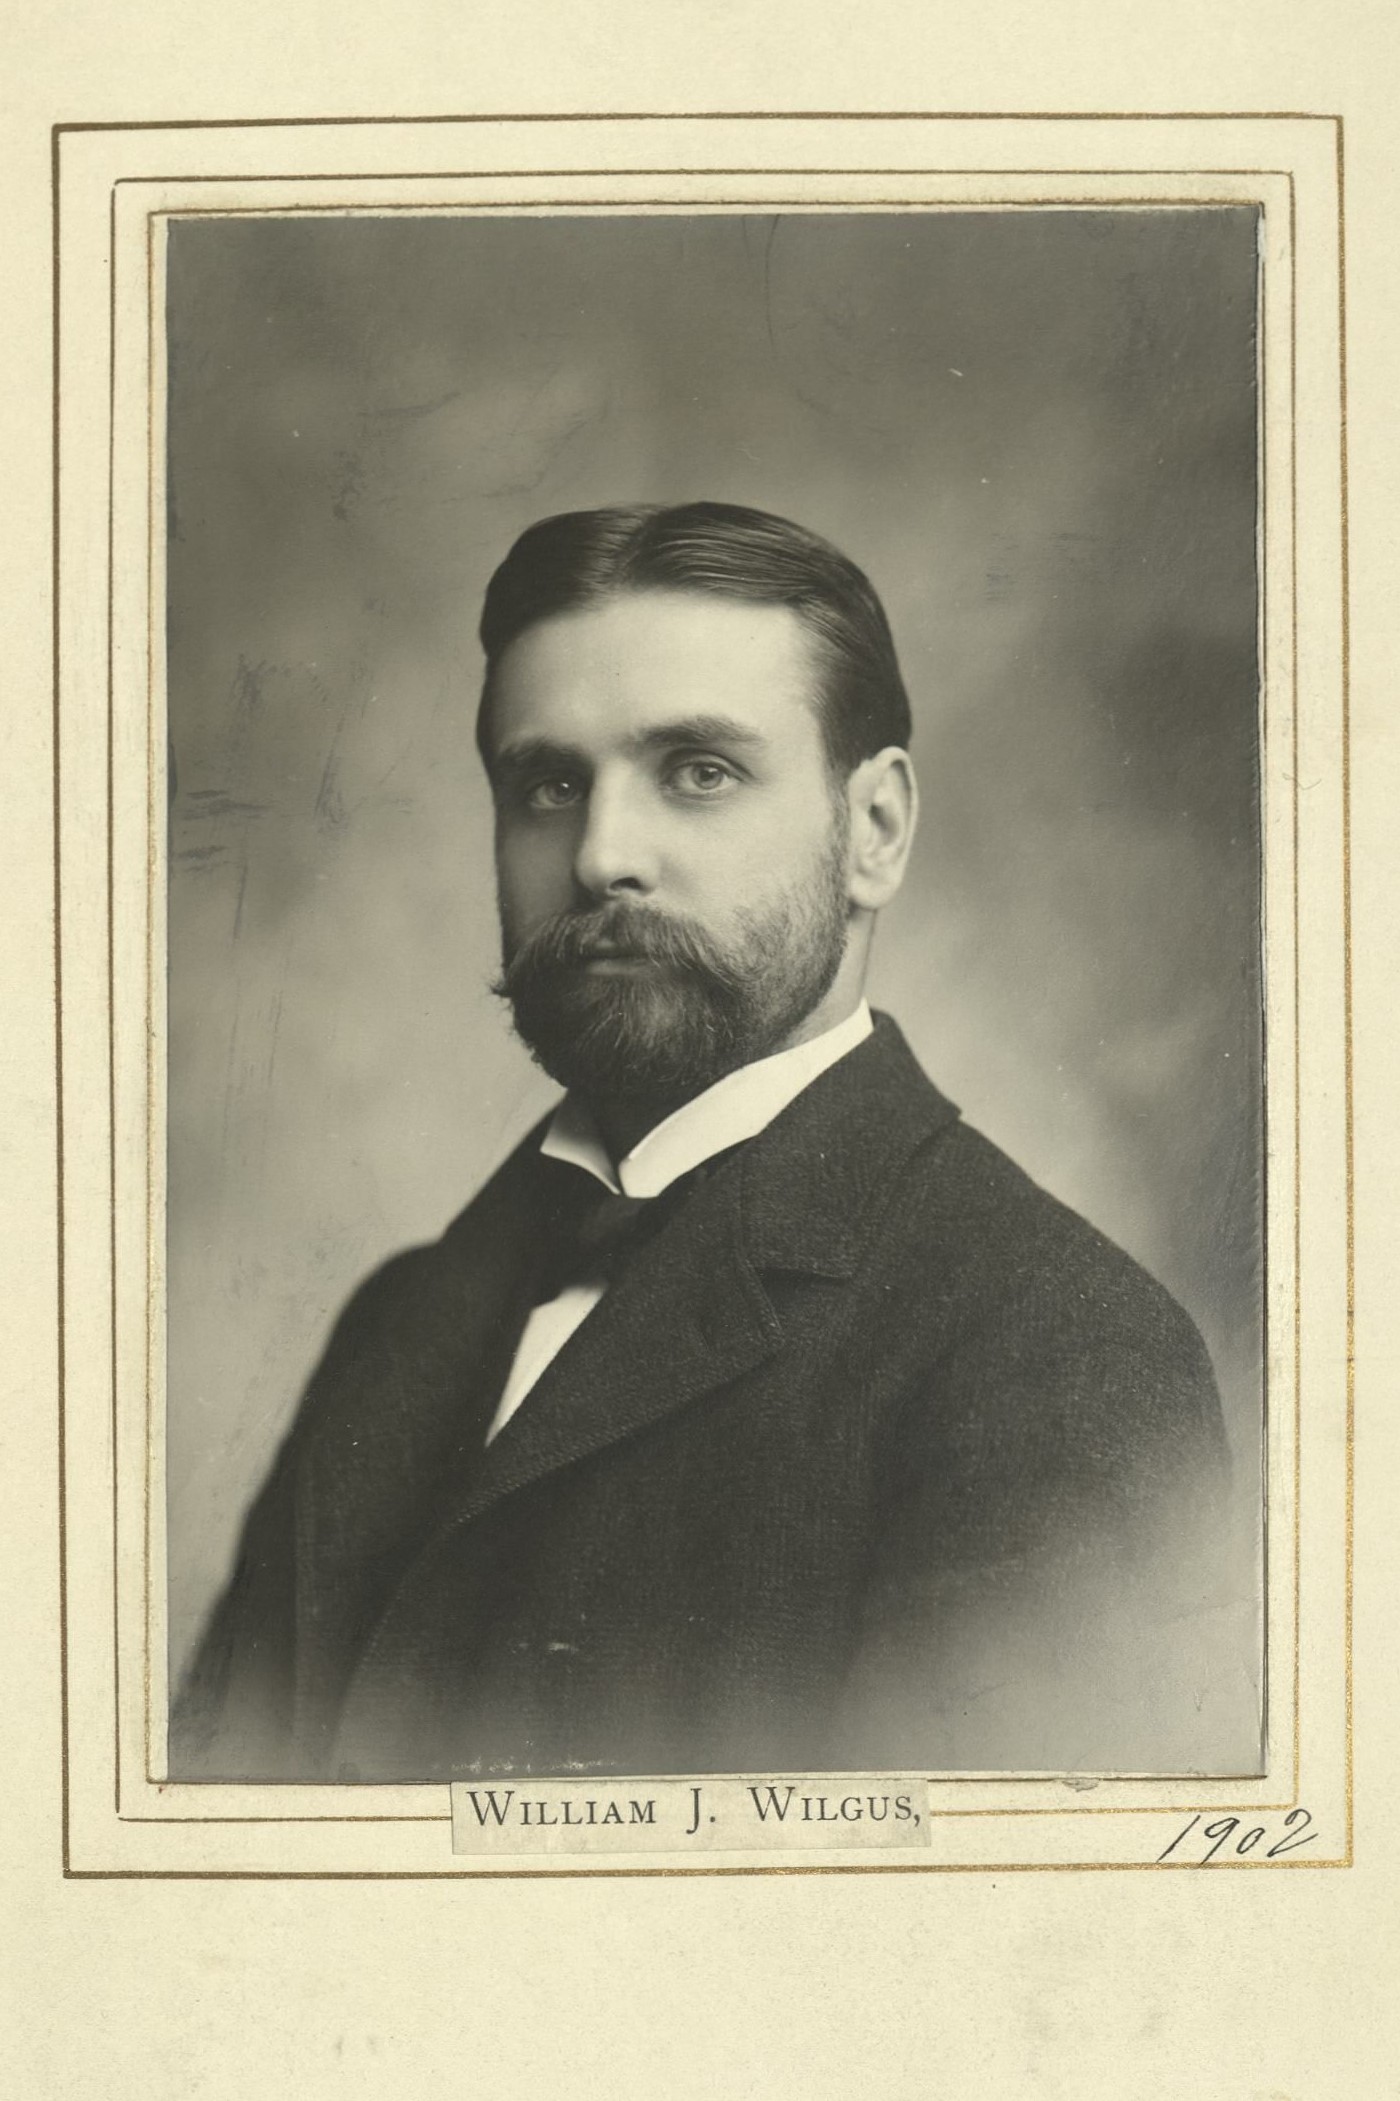 Member portrait of William J. Wilgus